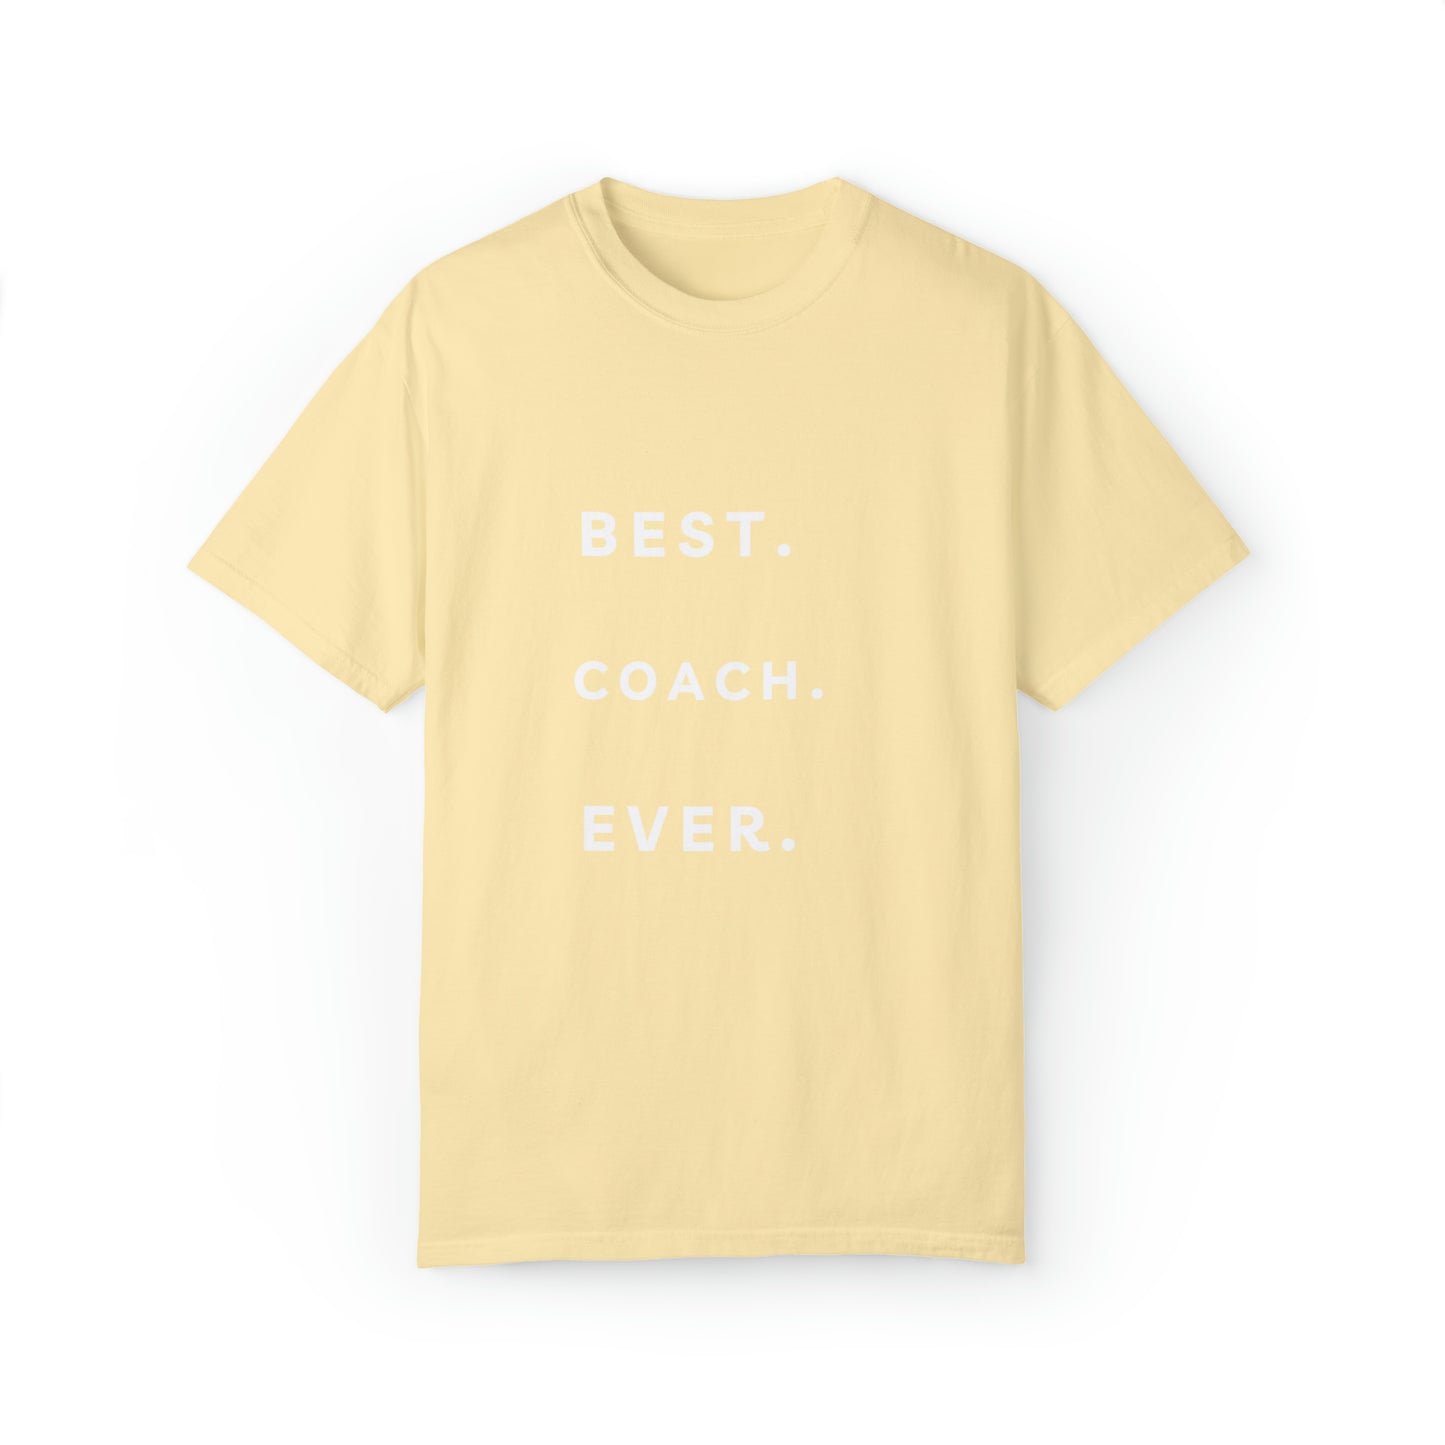 best coach ever t shirt gift shirt Unisex Garment-Dyed T-shirt